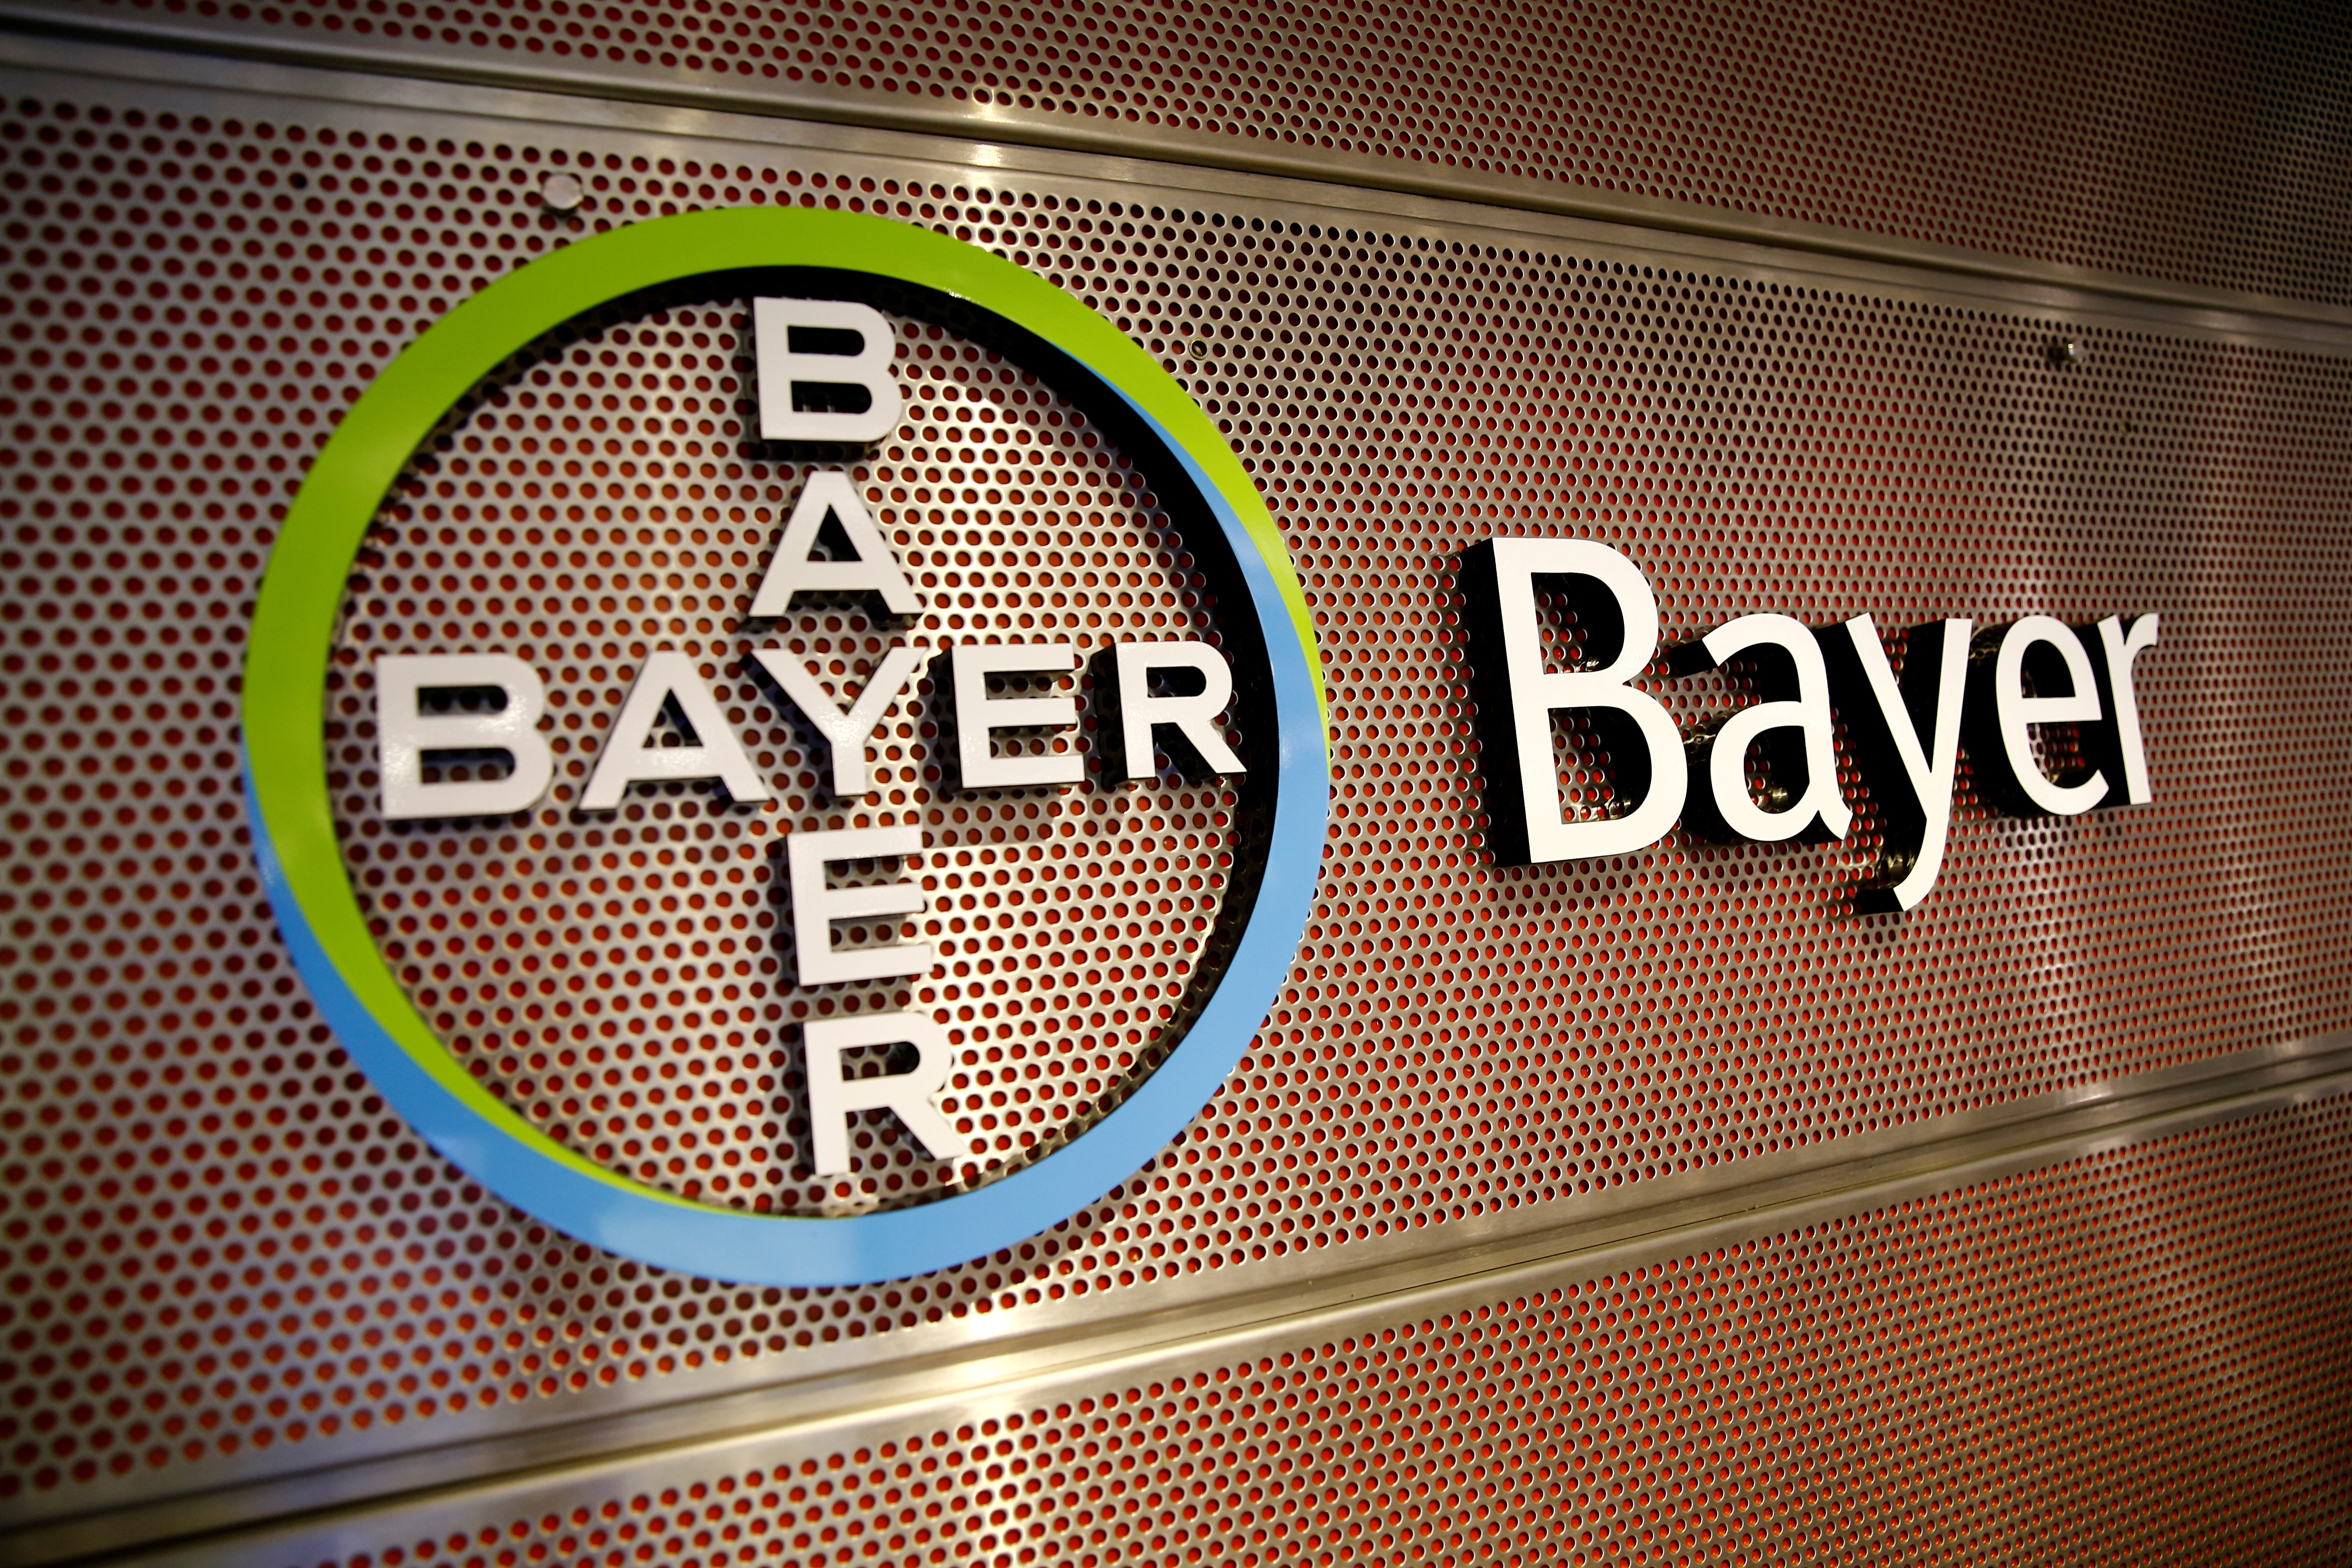 Bayer s'engage à atteindre la neutralité carbone d'ici 2030